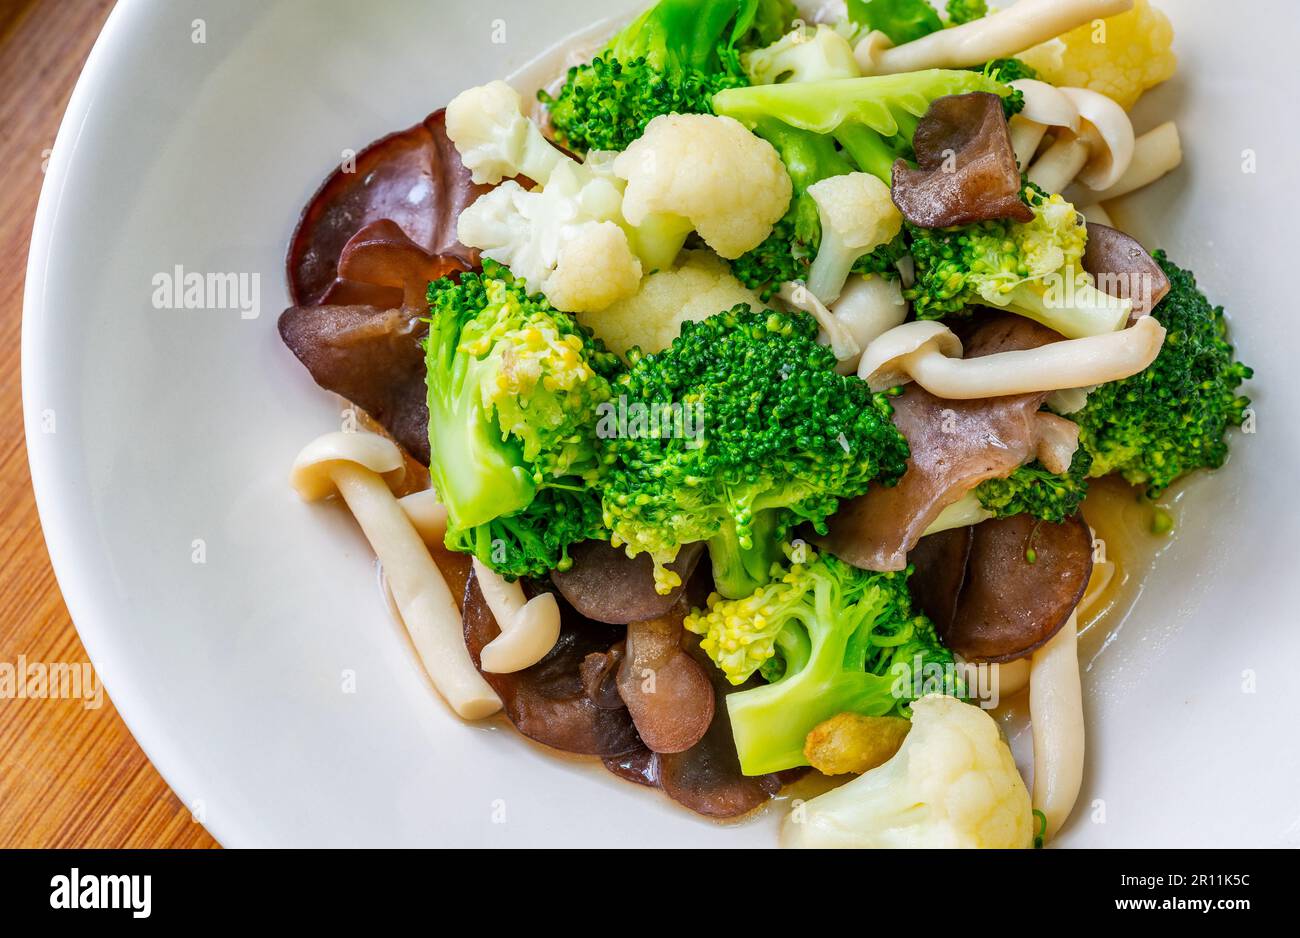 Menu di cibi salutari, funghi fritti in primo piano, cavolfiore e broccoli, cibo di verdure misto tailandese sano su un piatto bianco. Immagine ravvicinata, vista fr Foto Stock